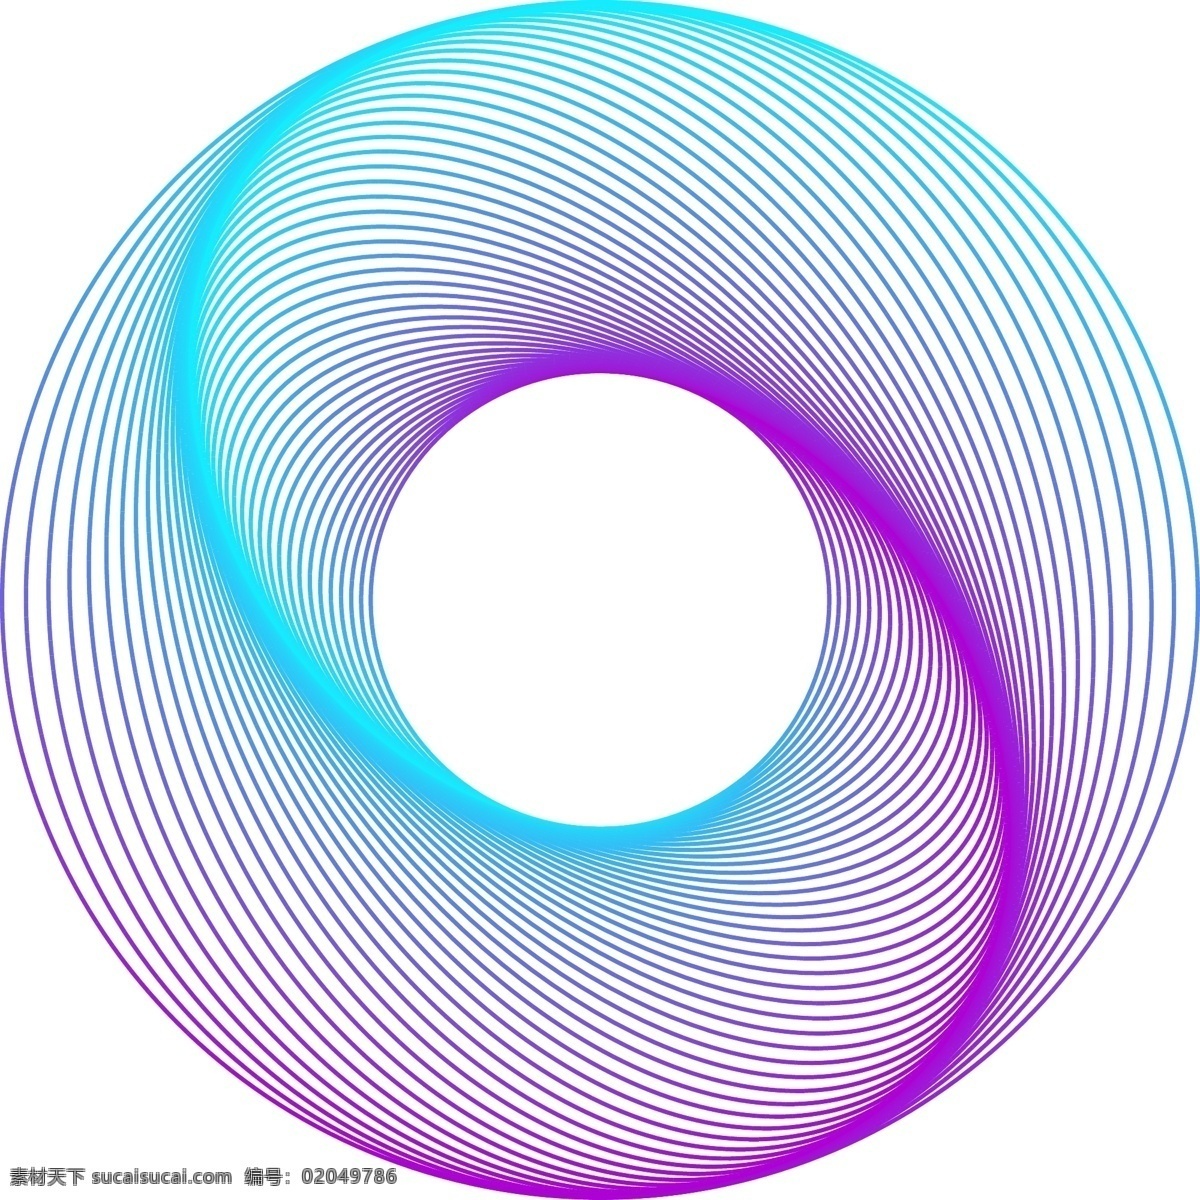 圆圈素材 海报素材 圆圈 背景素材 紫色圆圈